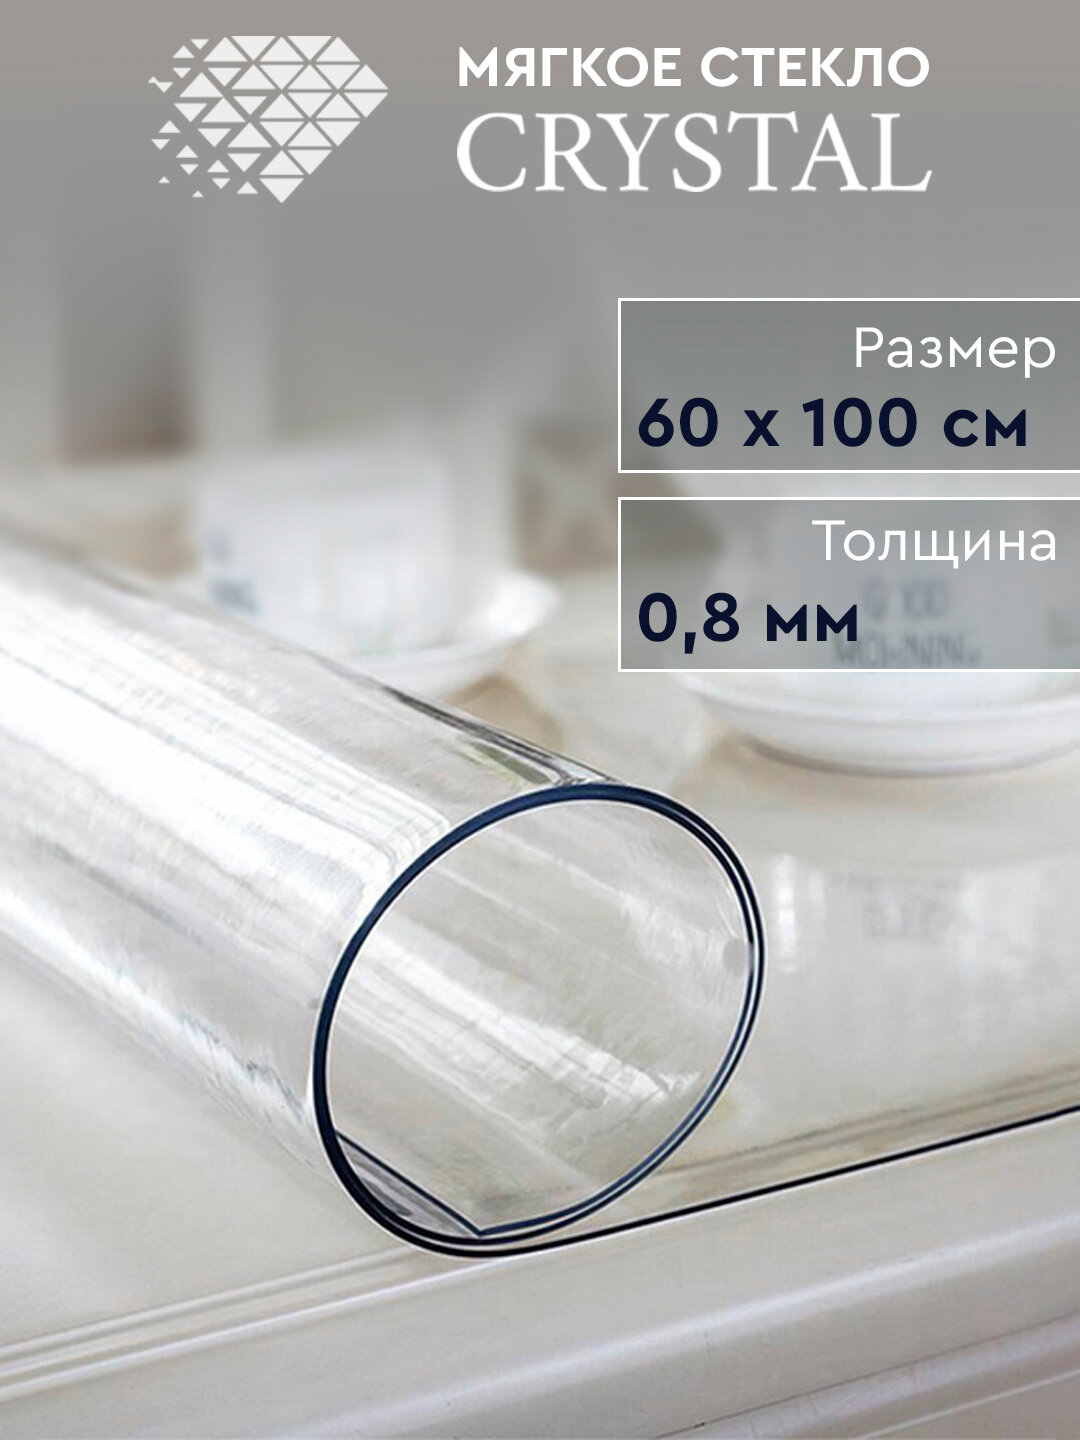 Скатерть термостойкая прозрачная «Мягкое стекло» Crystal 60х100 см, 0.8 мм.